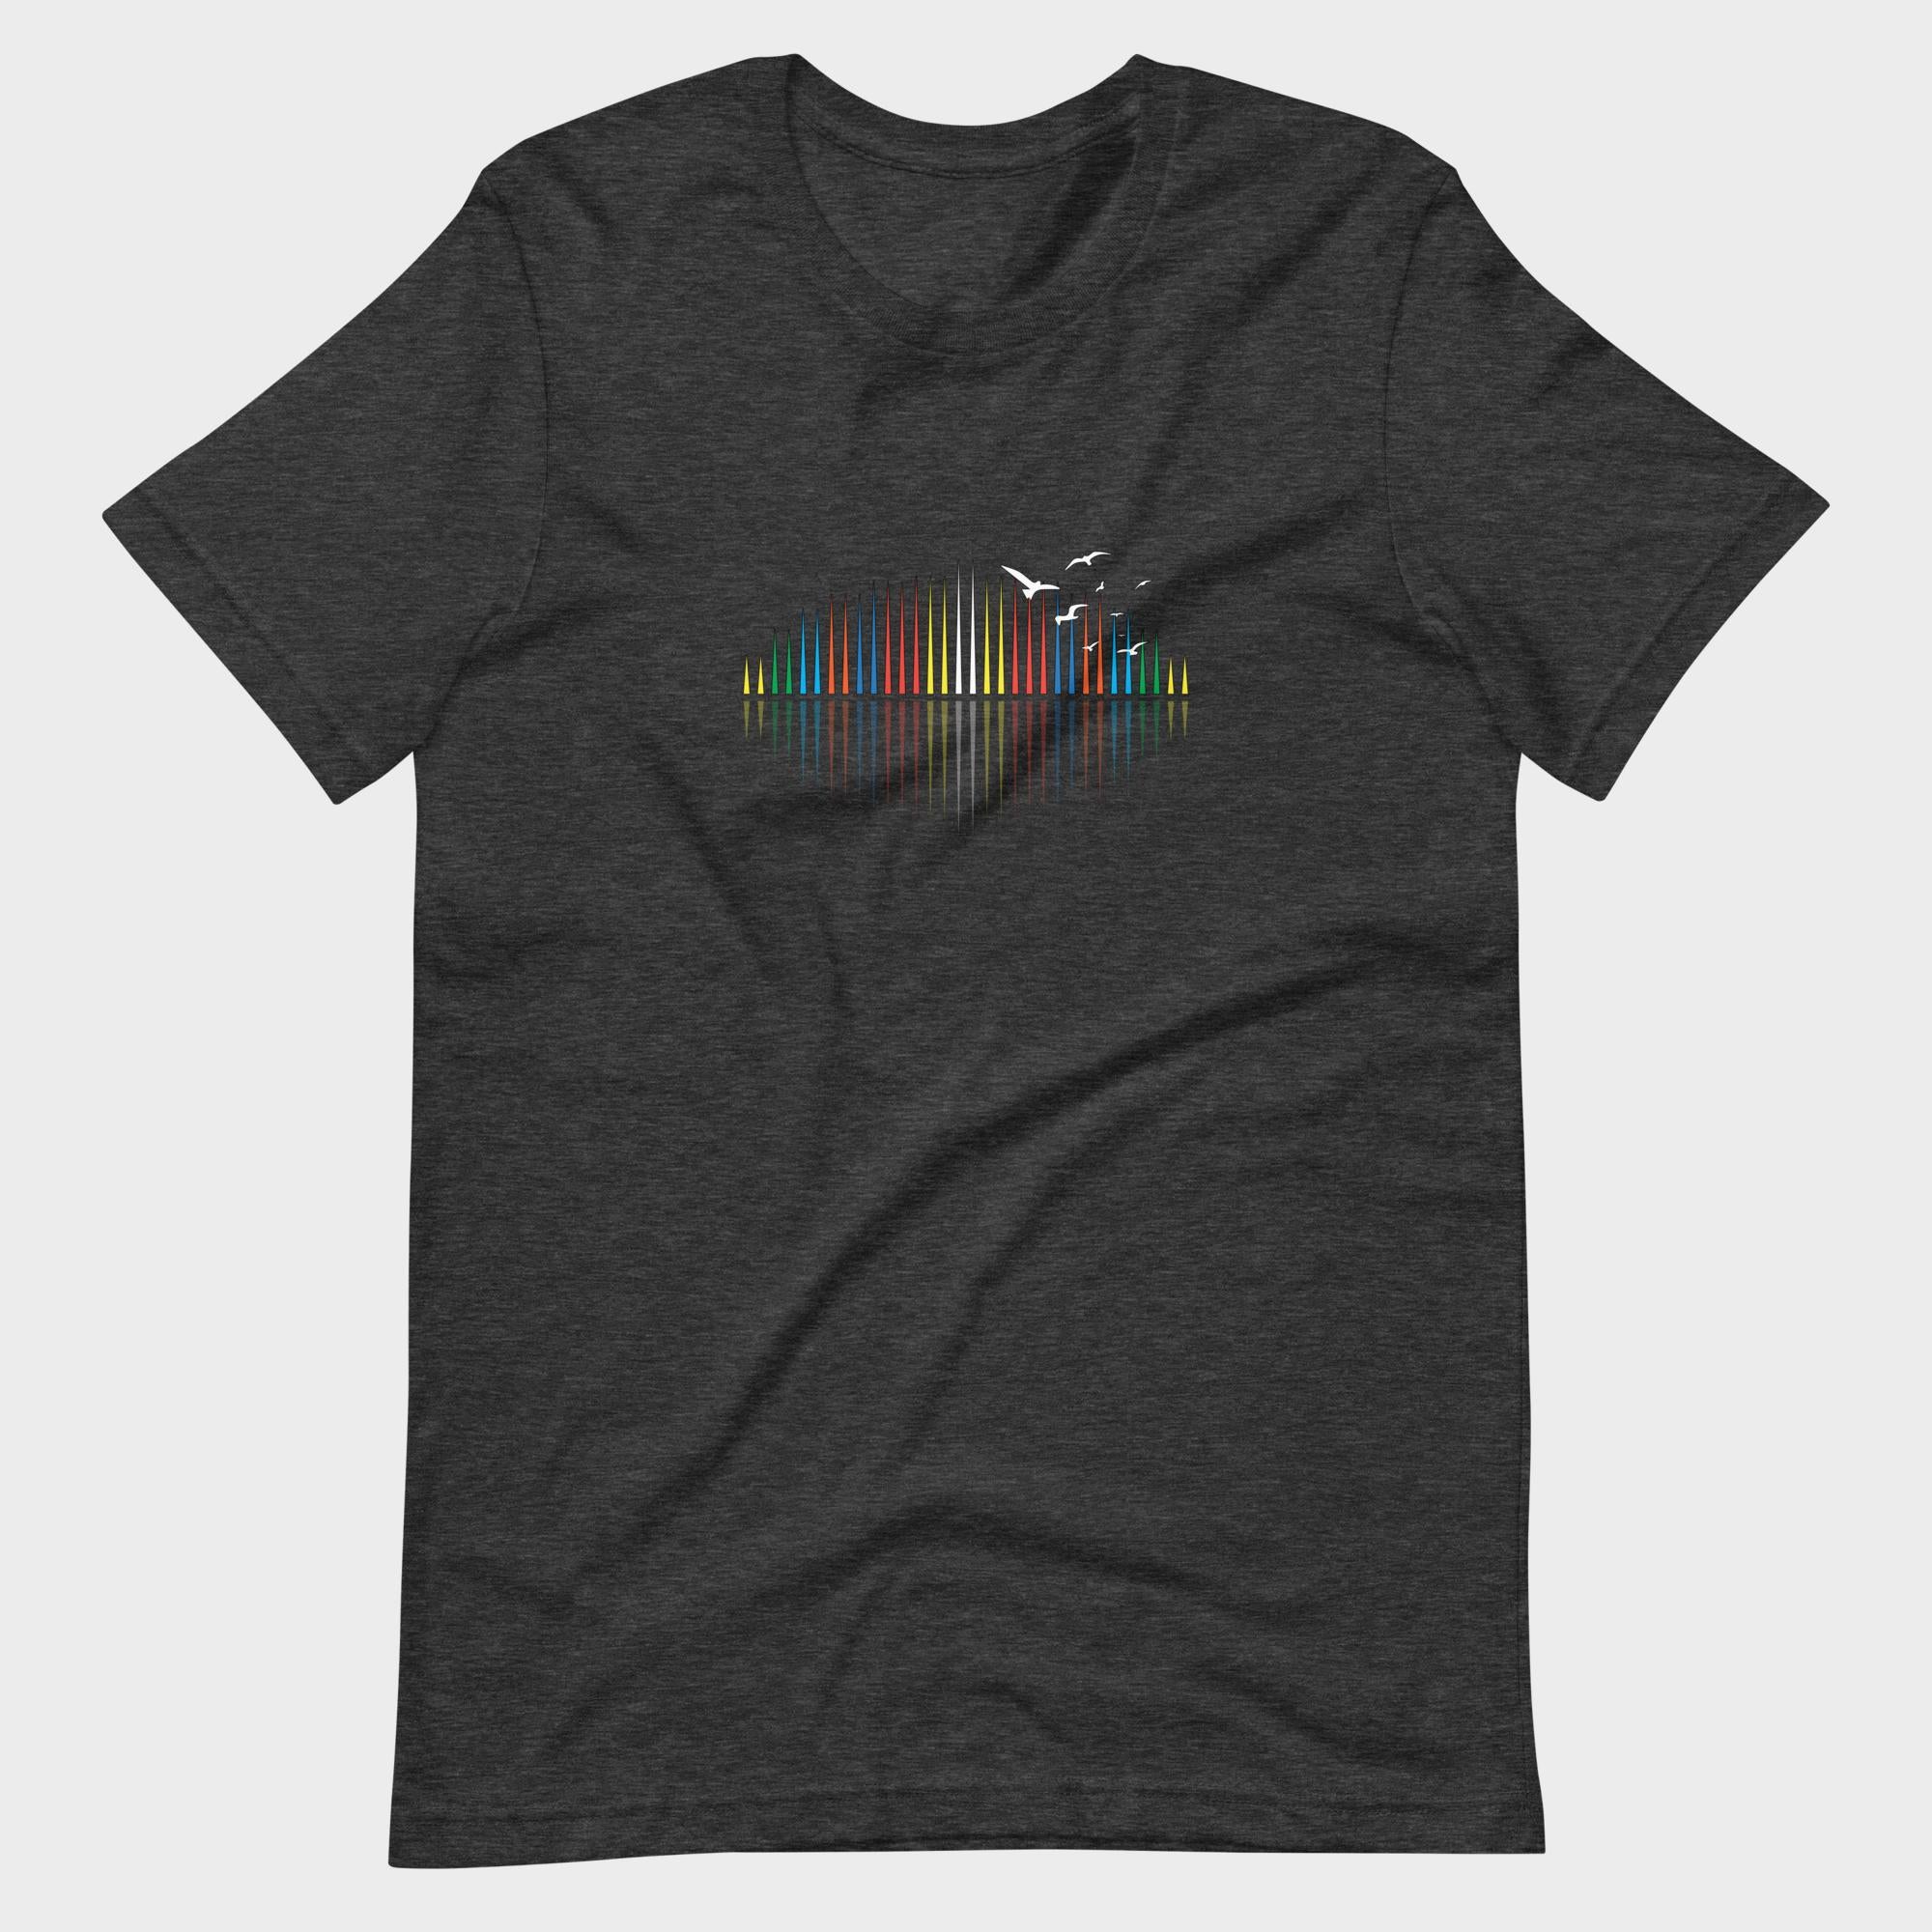 Sound's Spectrum - T-Shirt